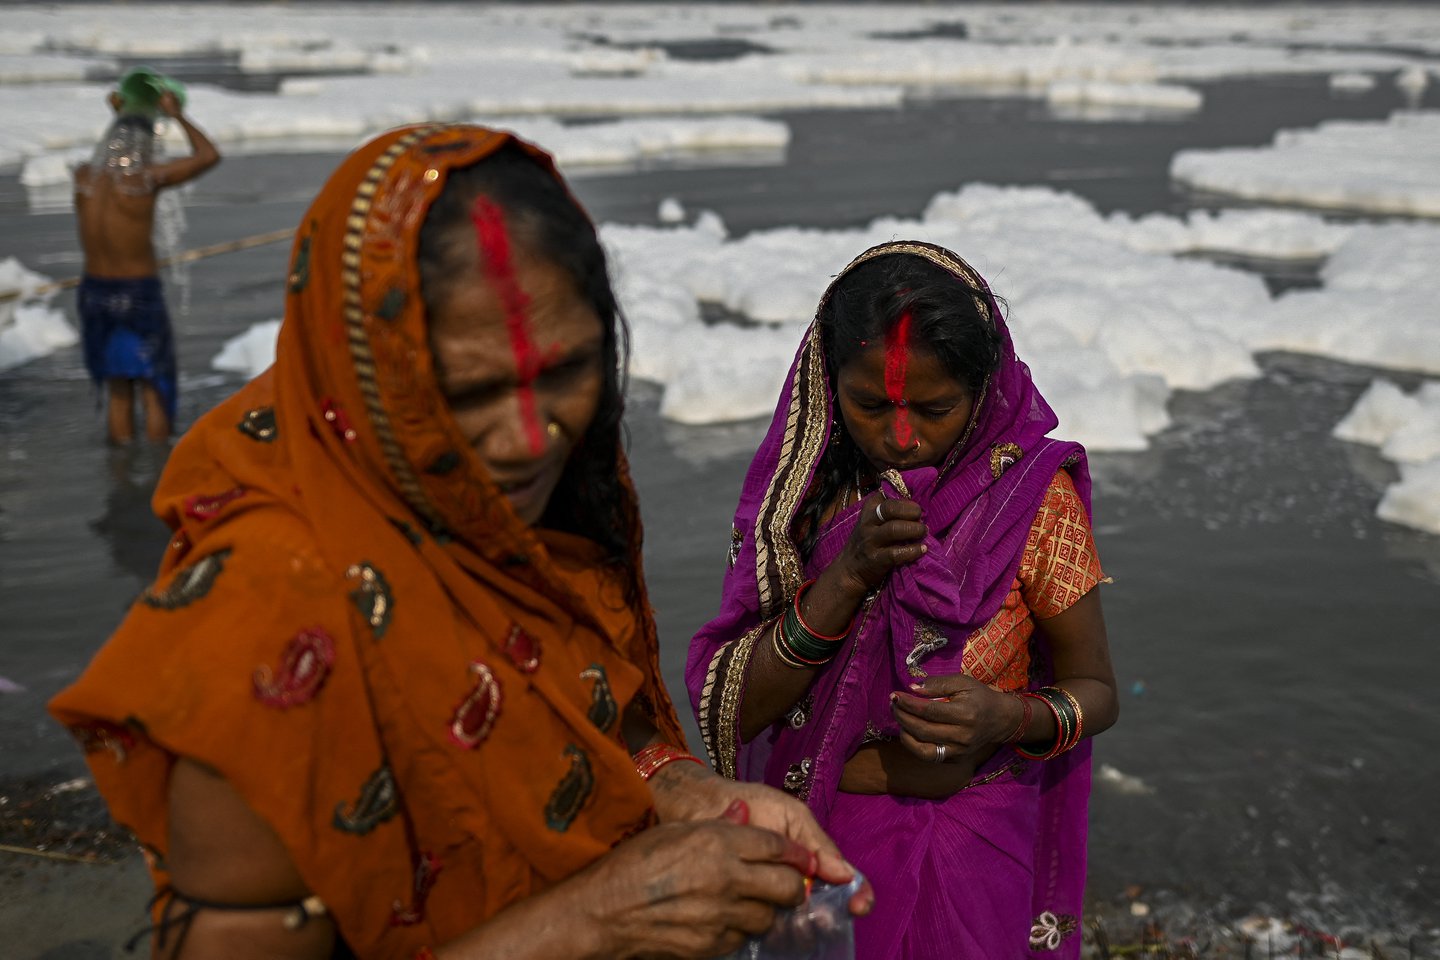 Un río sagrado de India quedó cubierto por una espuma tóxica: Devotos se bañaron durante ritual religioso (FOTOS)